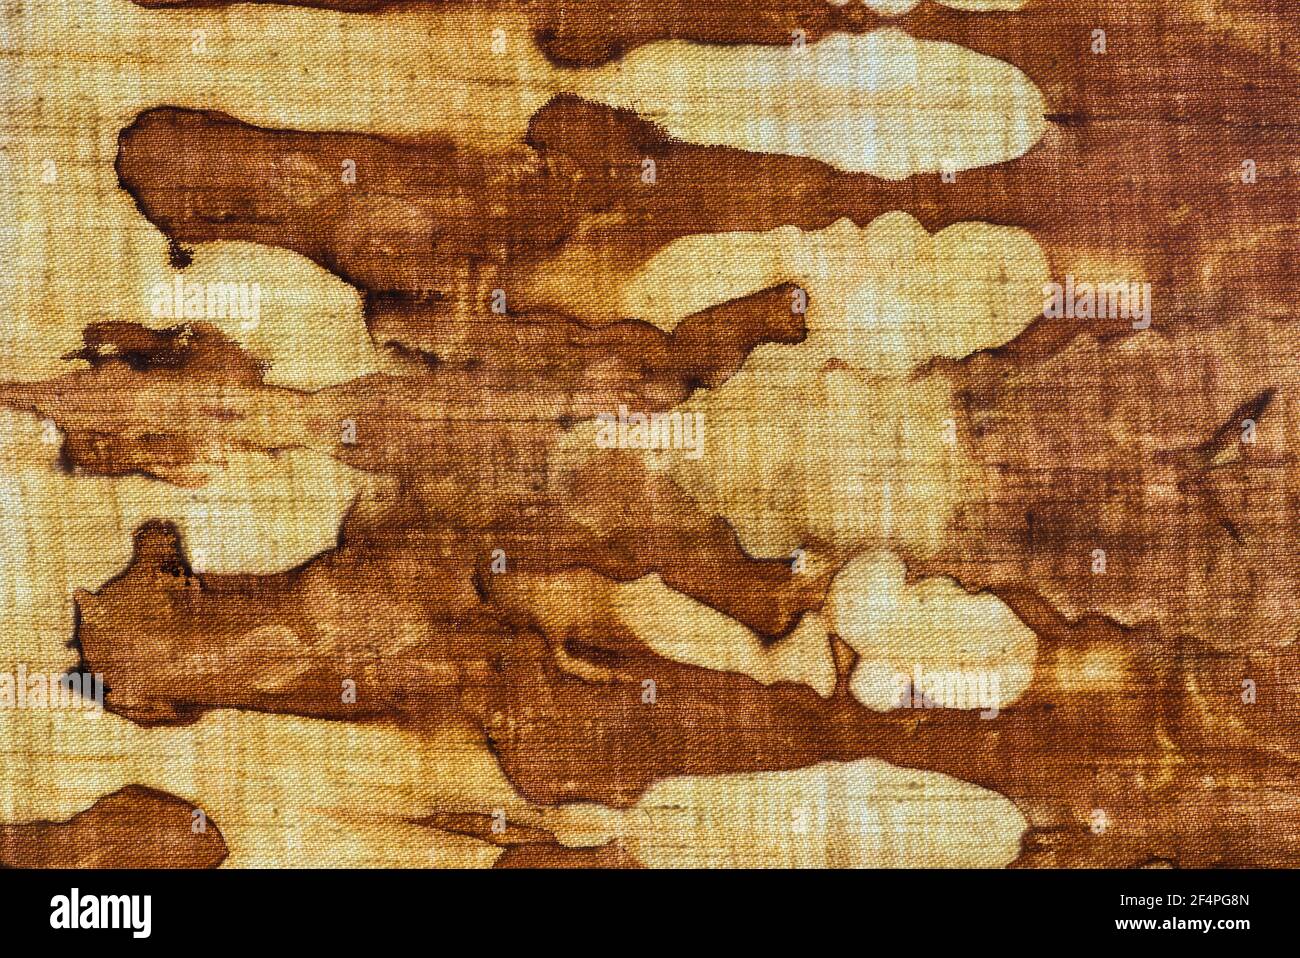 détail d'un motif en batik brun-ocre sur un coton tissu Banque D'Images